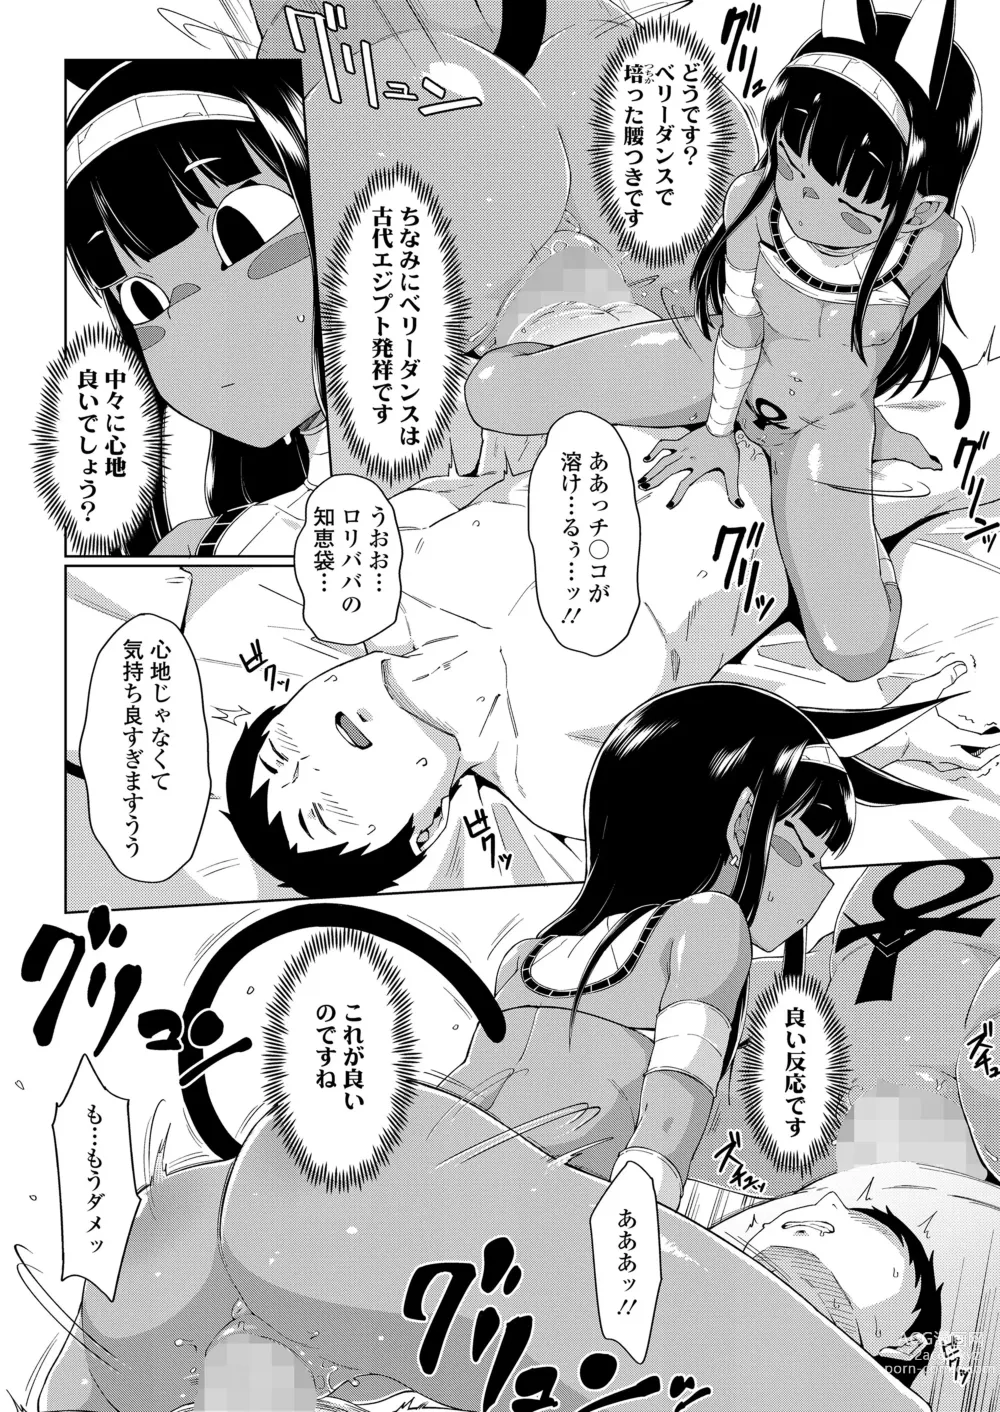 Page 20 of manga Towako Oboro Emaki 13